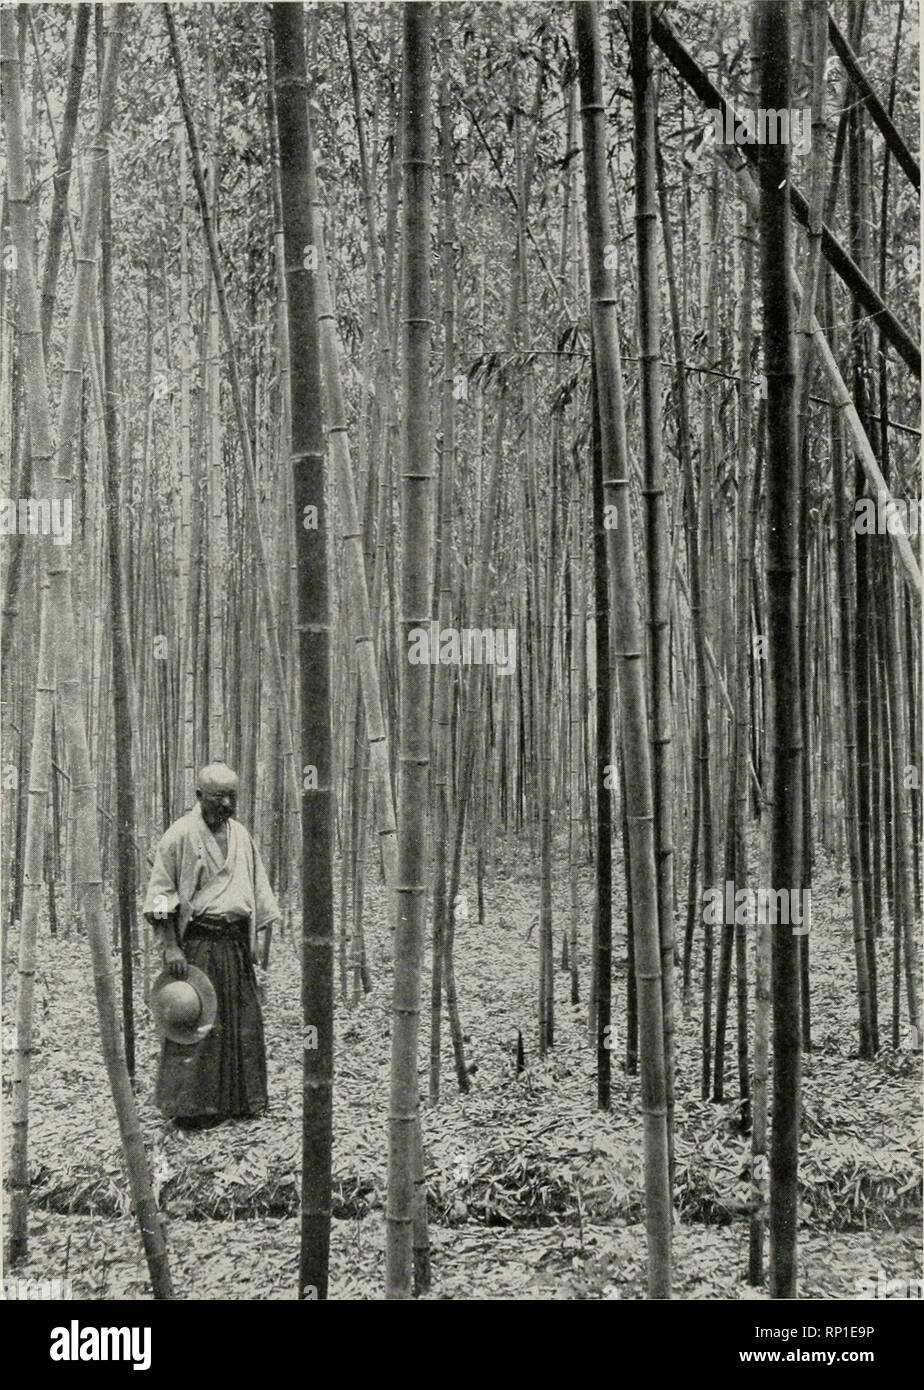 Amerikanische Forstwirtschaft. Die Wälder und die Forstwirtschaft.  Forstwirtschaft in Japan: ein gepflegter Wald ol Holz Bambus auf guten  Boden, dicker Mulch von Siriw ard Blätter, und öffnen Entwässerungsgraben  im Vordergrund (Seite